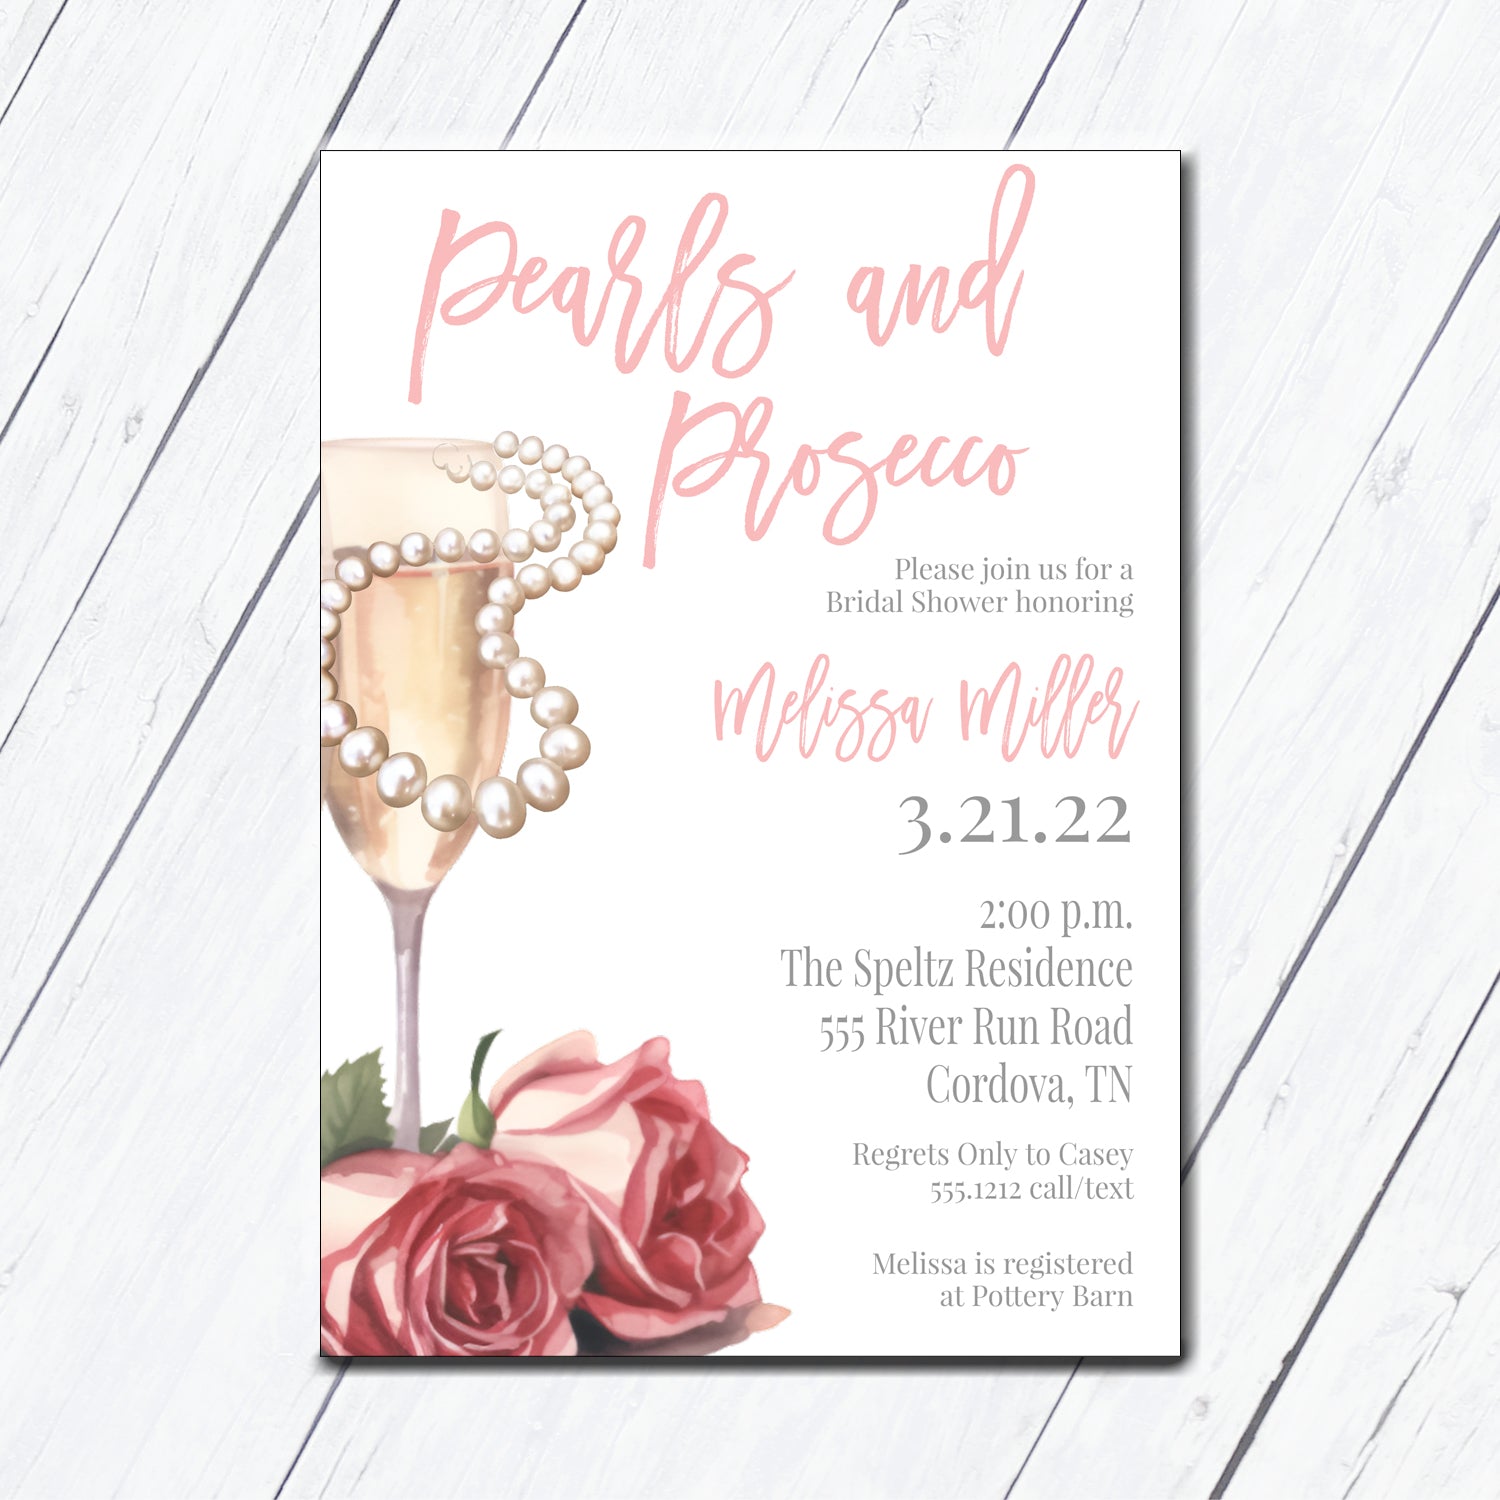 pearls and prosecco bridal shower invitation